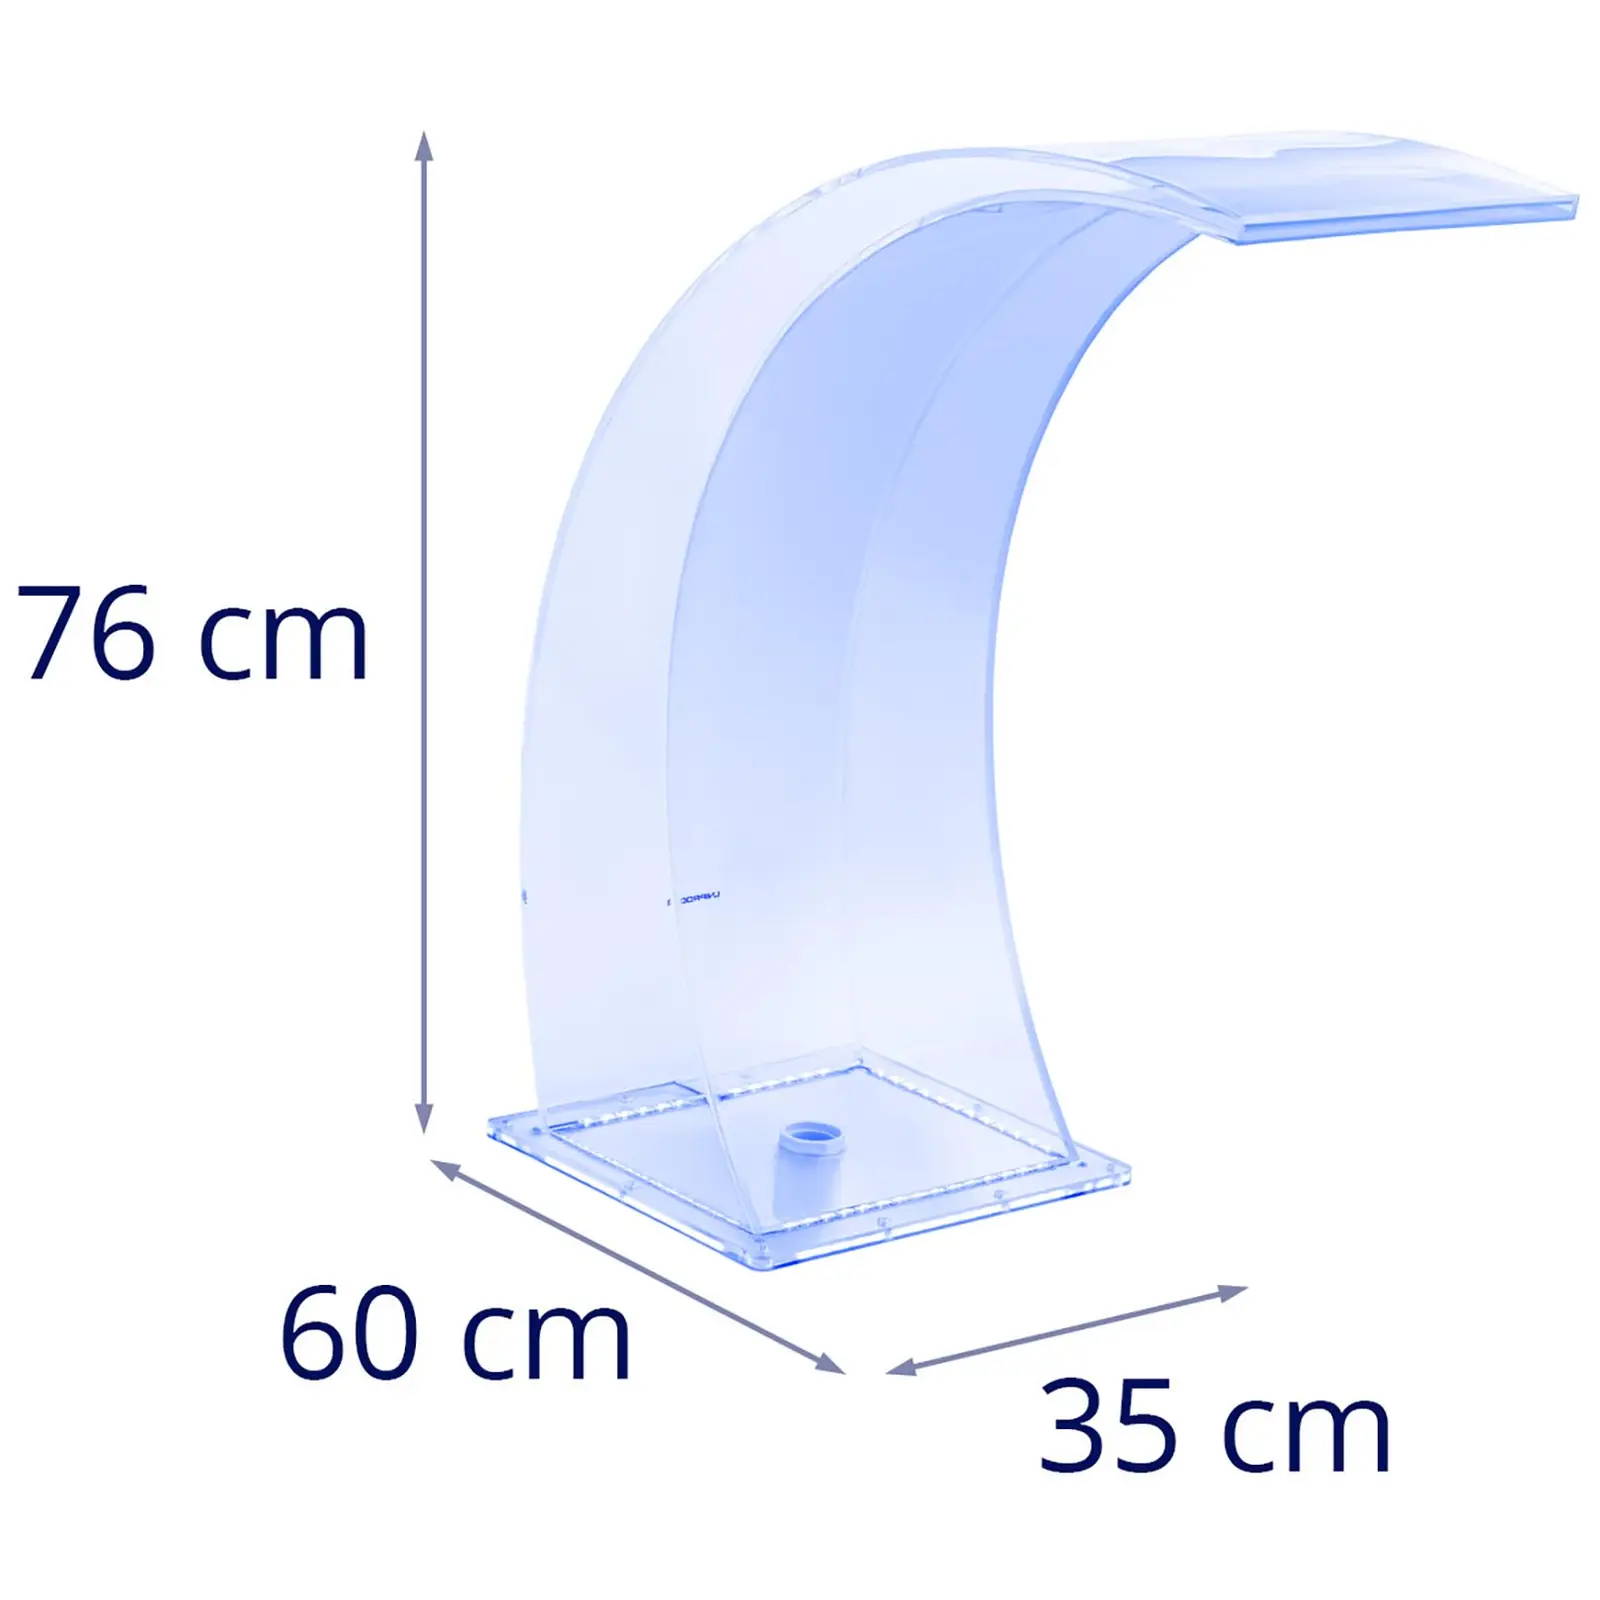 Bico de queda de água - cm - Iluminação LED - azul/branco